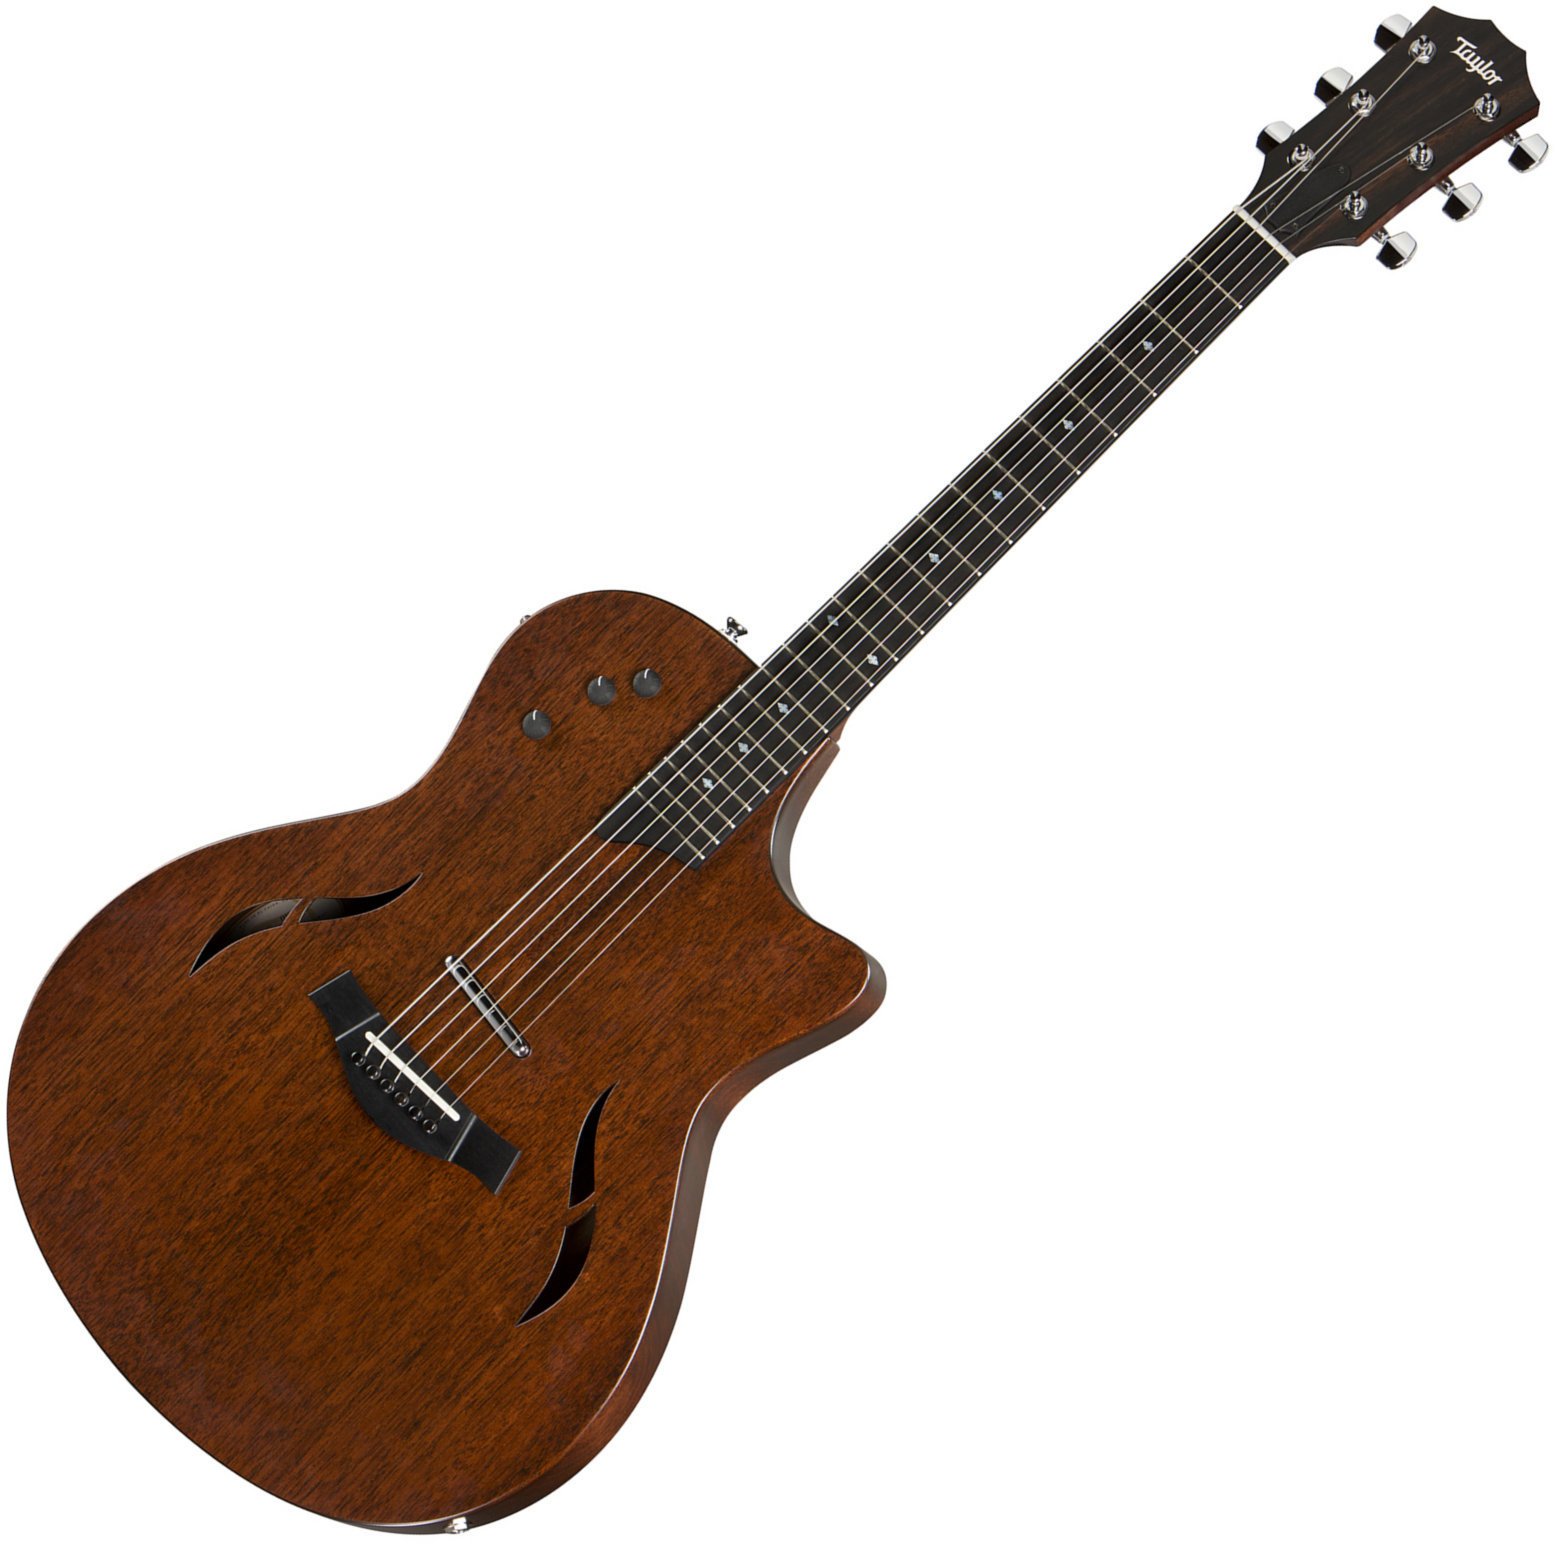 Ηλεκτροακουστική Κιθάρα Taylor Guitars T5 Classic Hybrid Electric Guitar Tropical Mahogany